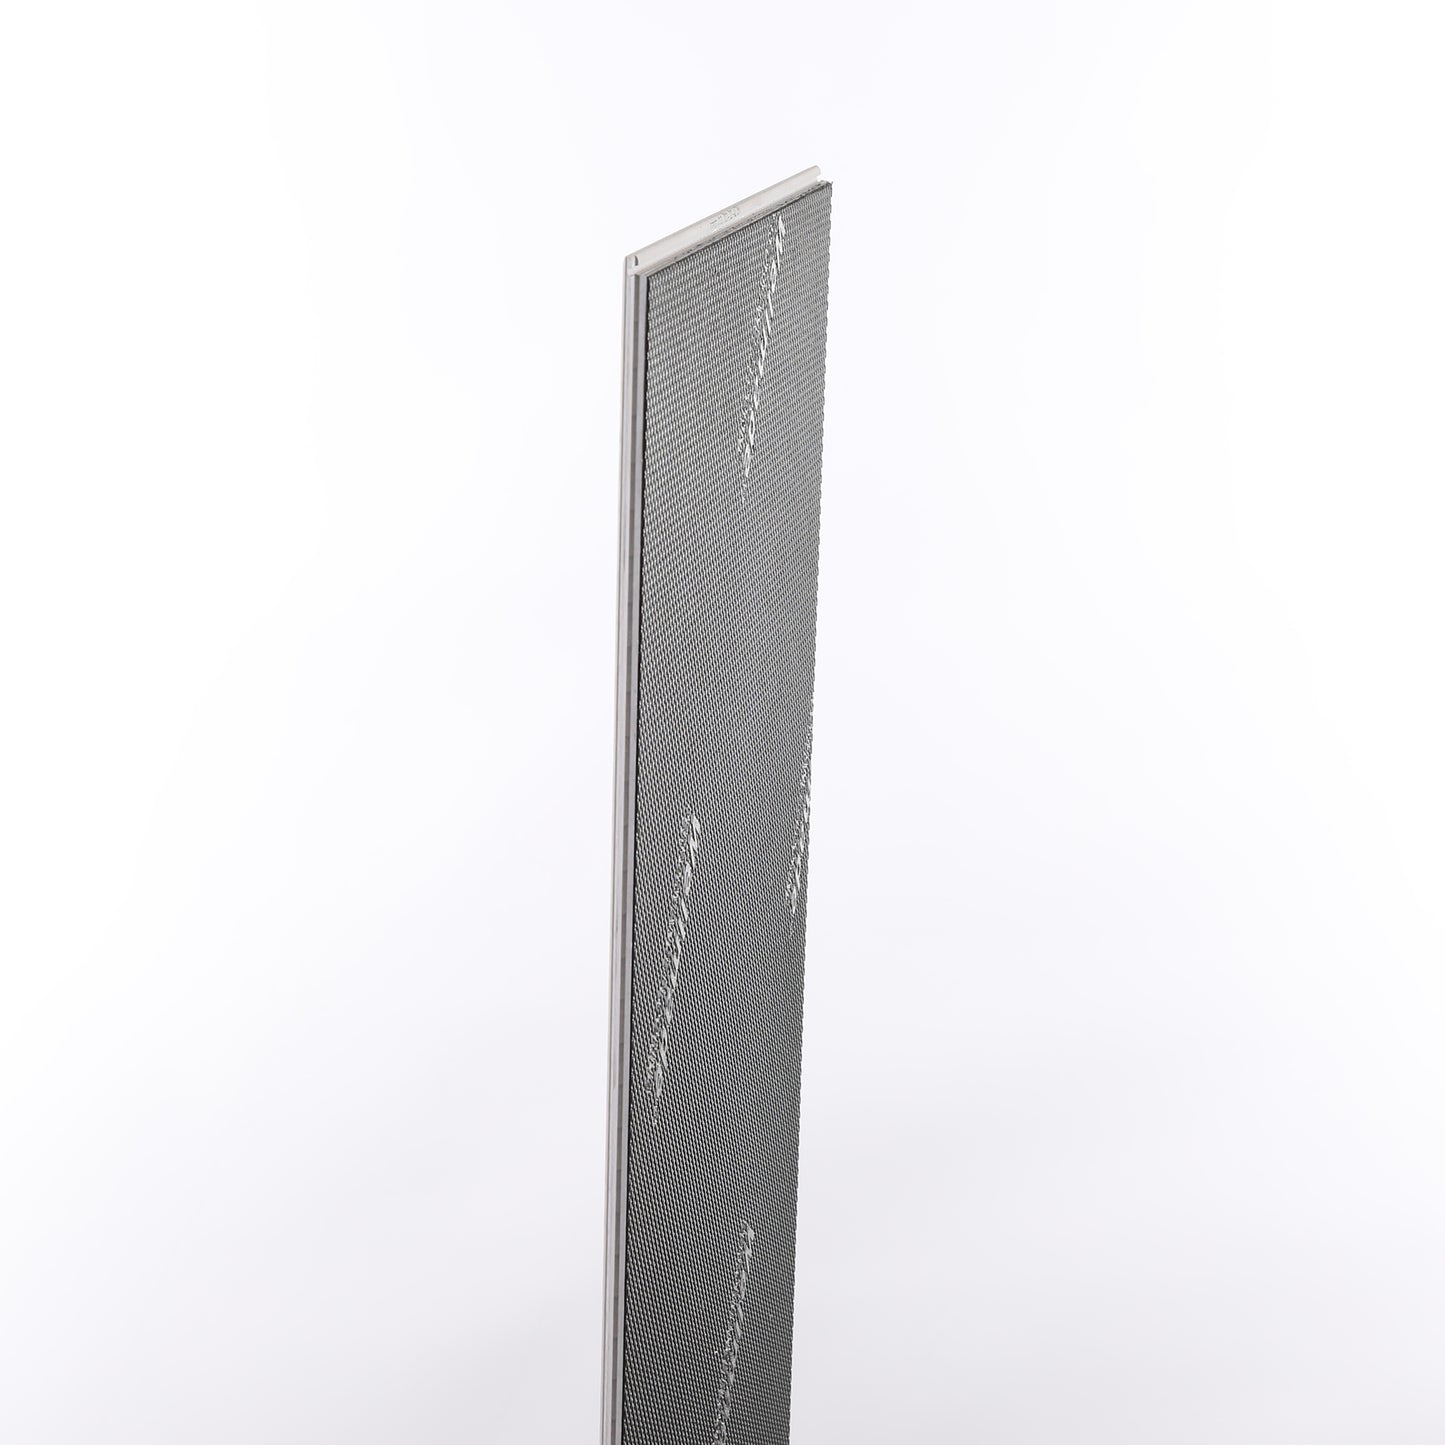 6mm Colorado HDPC® Waterproof Luxury Vinyl Tile Flooring 9.13 in. Wide x 60 in. Long